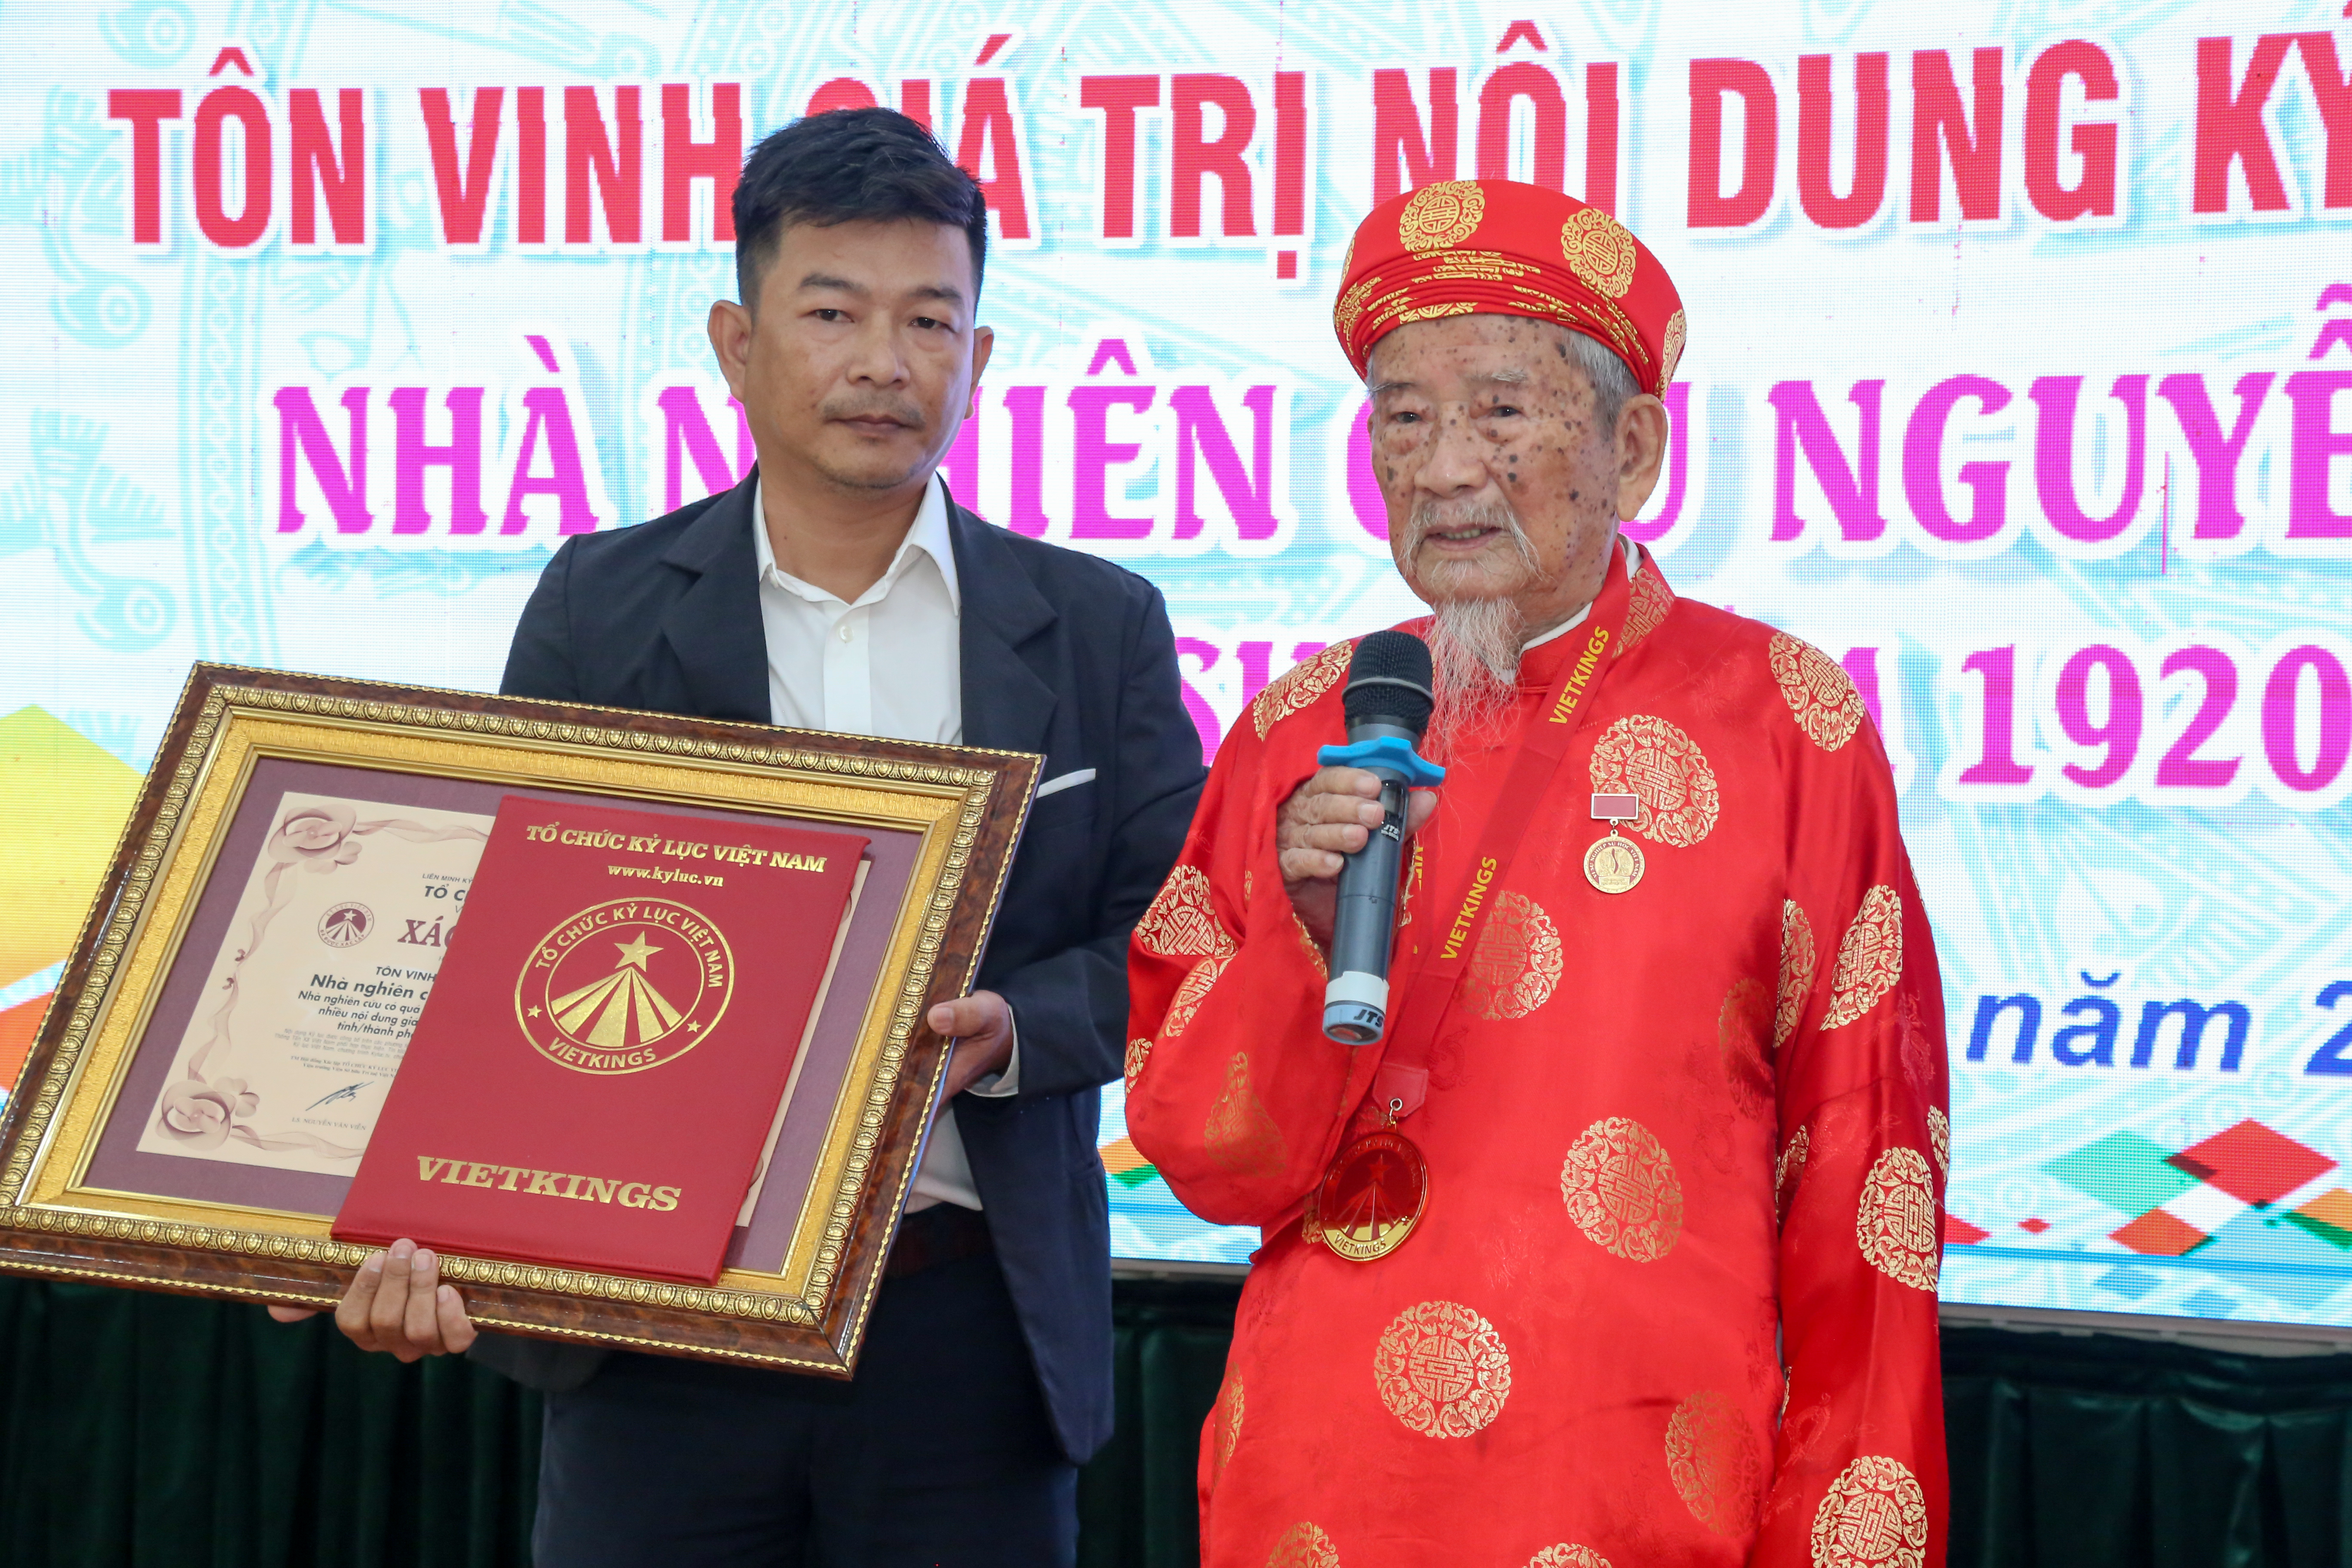 Nhà nghiên cứu 102 tuổi Nguyễn Đình Tư đạt kỷ lục Việt Nam về lao động, sáng tạo - Ảnh 2.